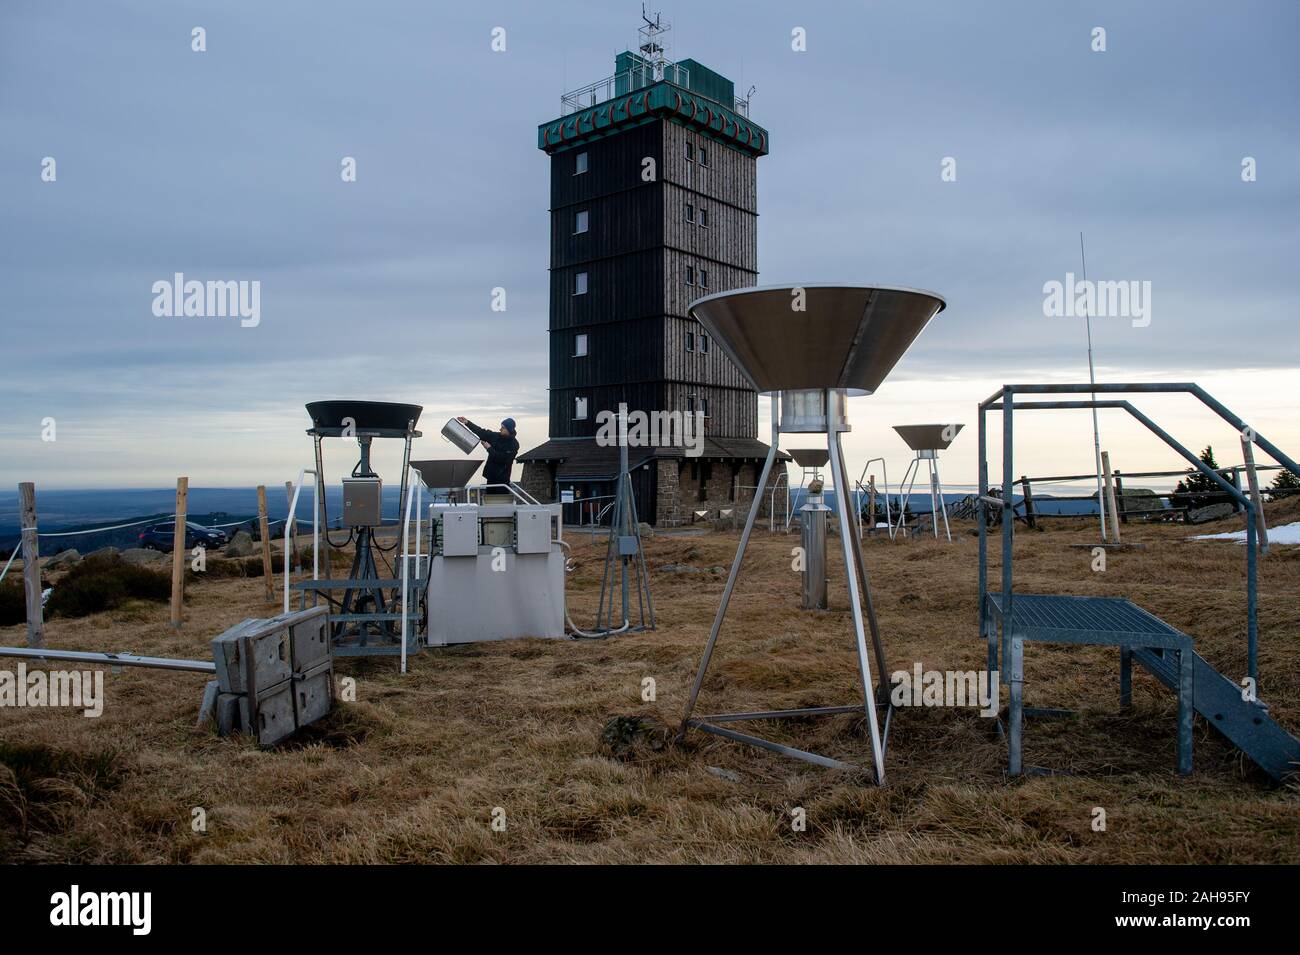 19 dicembre 2019, Sassonia-Anhalt, Wernigerode: Marc Kinkeldey, osservatore meteorologico tedesco del servizio meteo (DWD), controlli manualmente una stazione di misurazione sul Brocken per determinare la quantità di pioggia. Sulla sinistra è possibile vedere l'Automated stazione di misurazione per la pioggia. Per 180 anni il Brocken era un posto di lavoro estreme per meteo osservatori. A partire dal 1 o gennaio 2020, automatico tecnologia di misurazione assumerà. Come su altre cime come il massiccio dello Zugspitze e il Fichtelberg, il tedesco servizio meteo è ora interrompendo il lavoro degli osservatori meteo sul più alto picco di Harz. Il prossimo anno, solo della radioattività Foto Stock